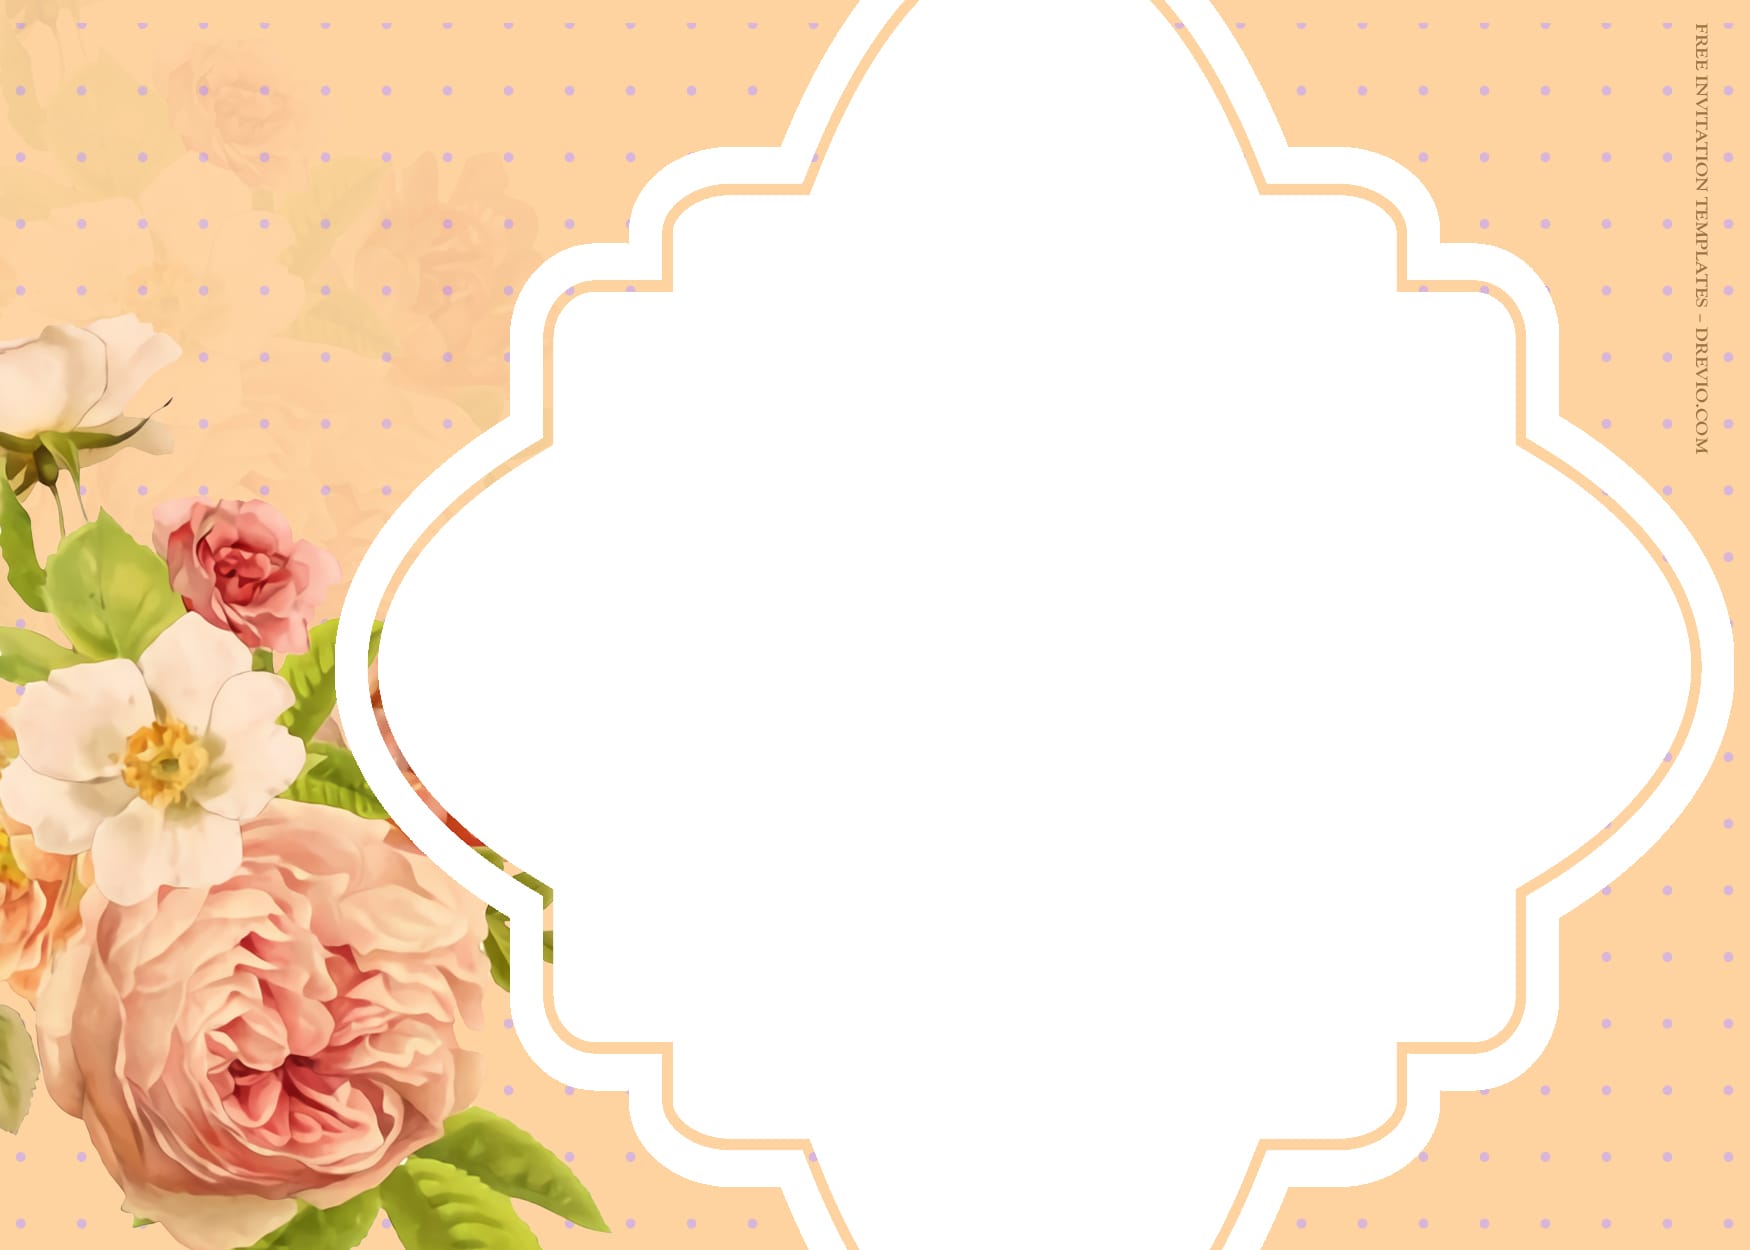 9+ Petals Blossom Watercolor Floral Wedding Invitation Templates Five